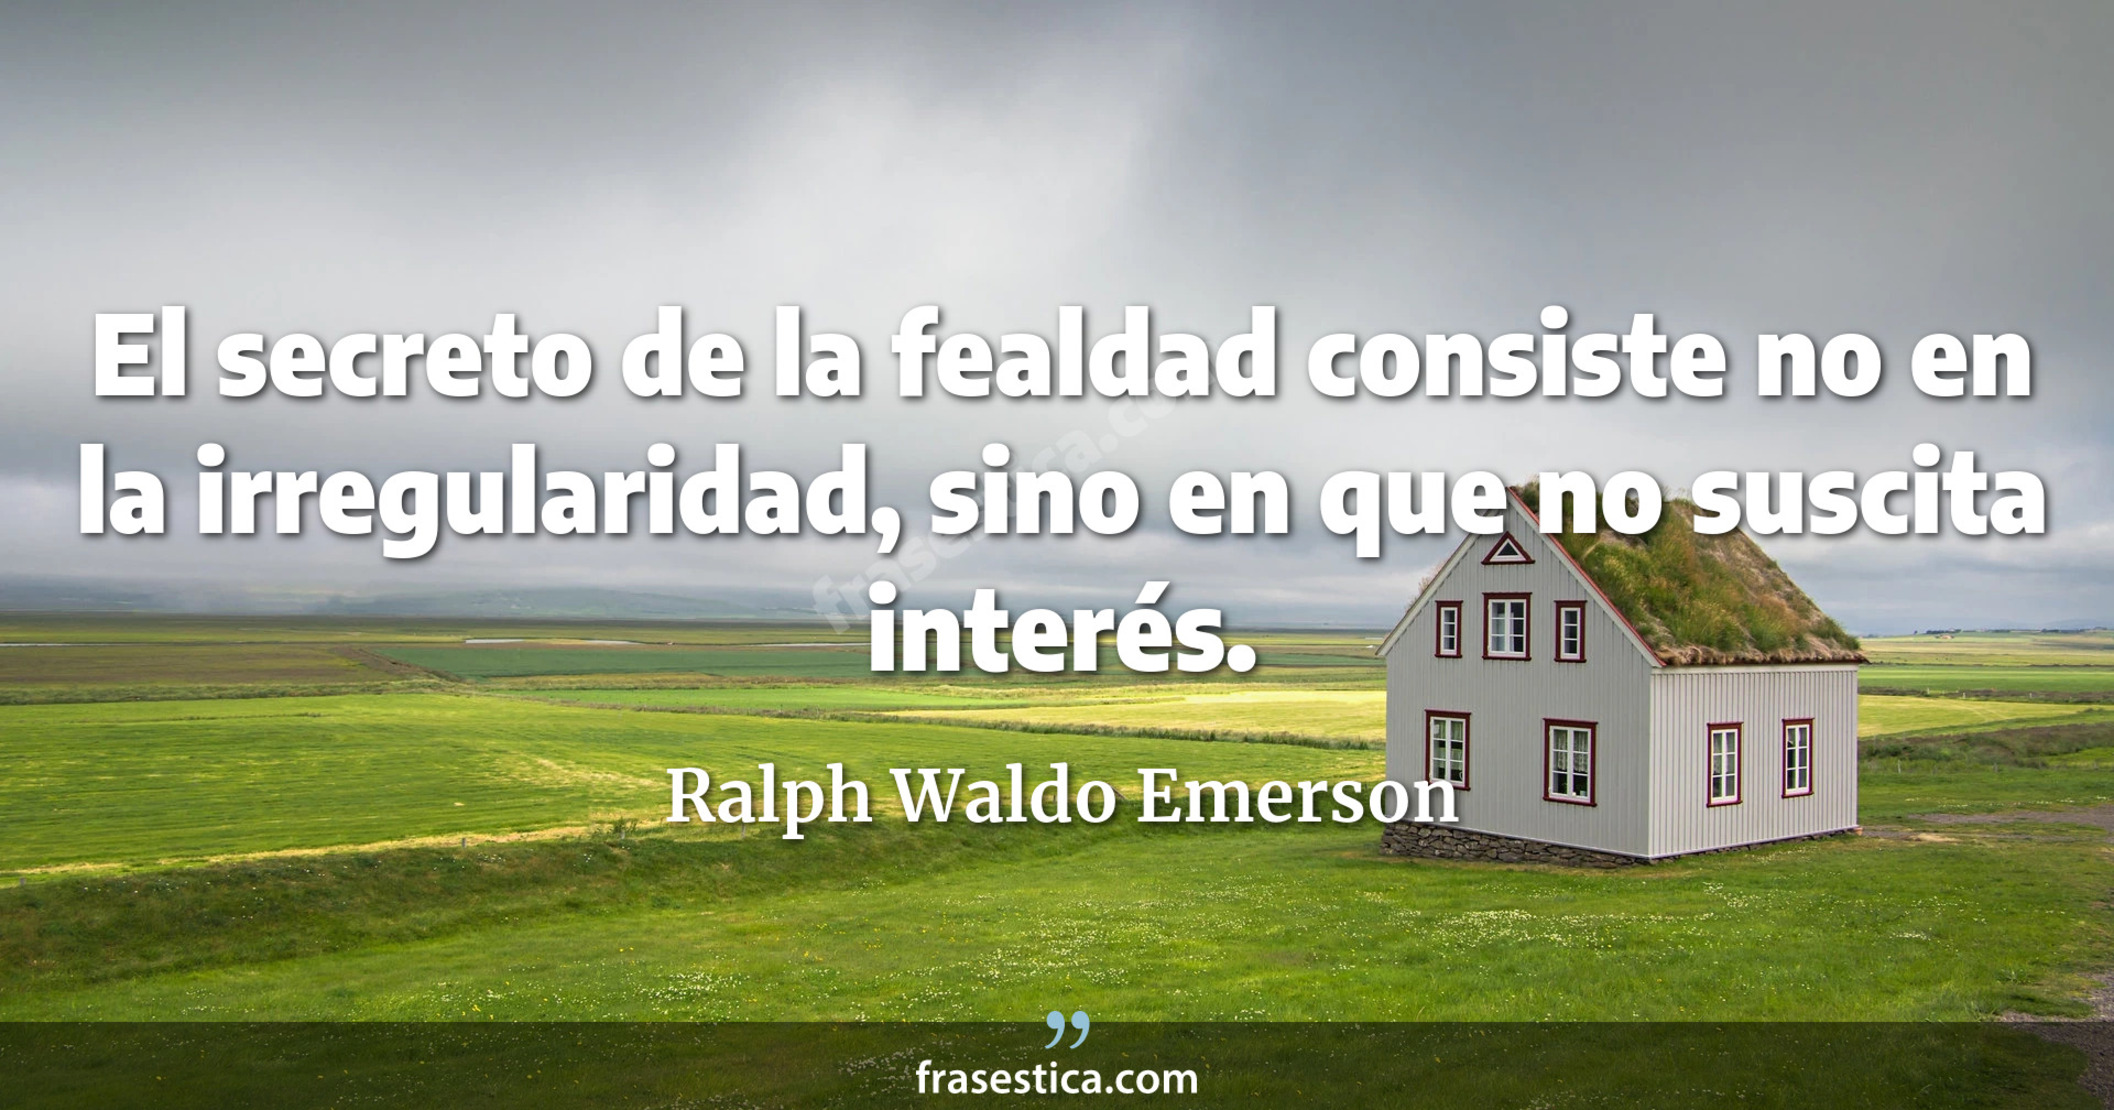 El secreto de la fealdad consiste no en la irregularidad, sino en que no suscita interés. - Ralph Waldo Emerson